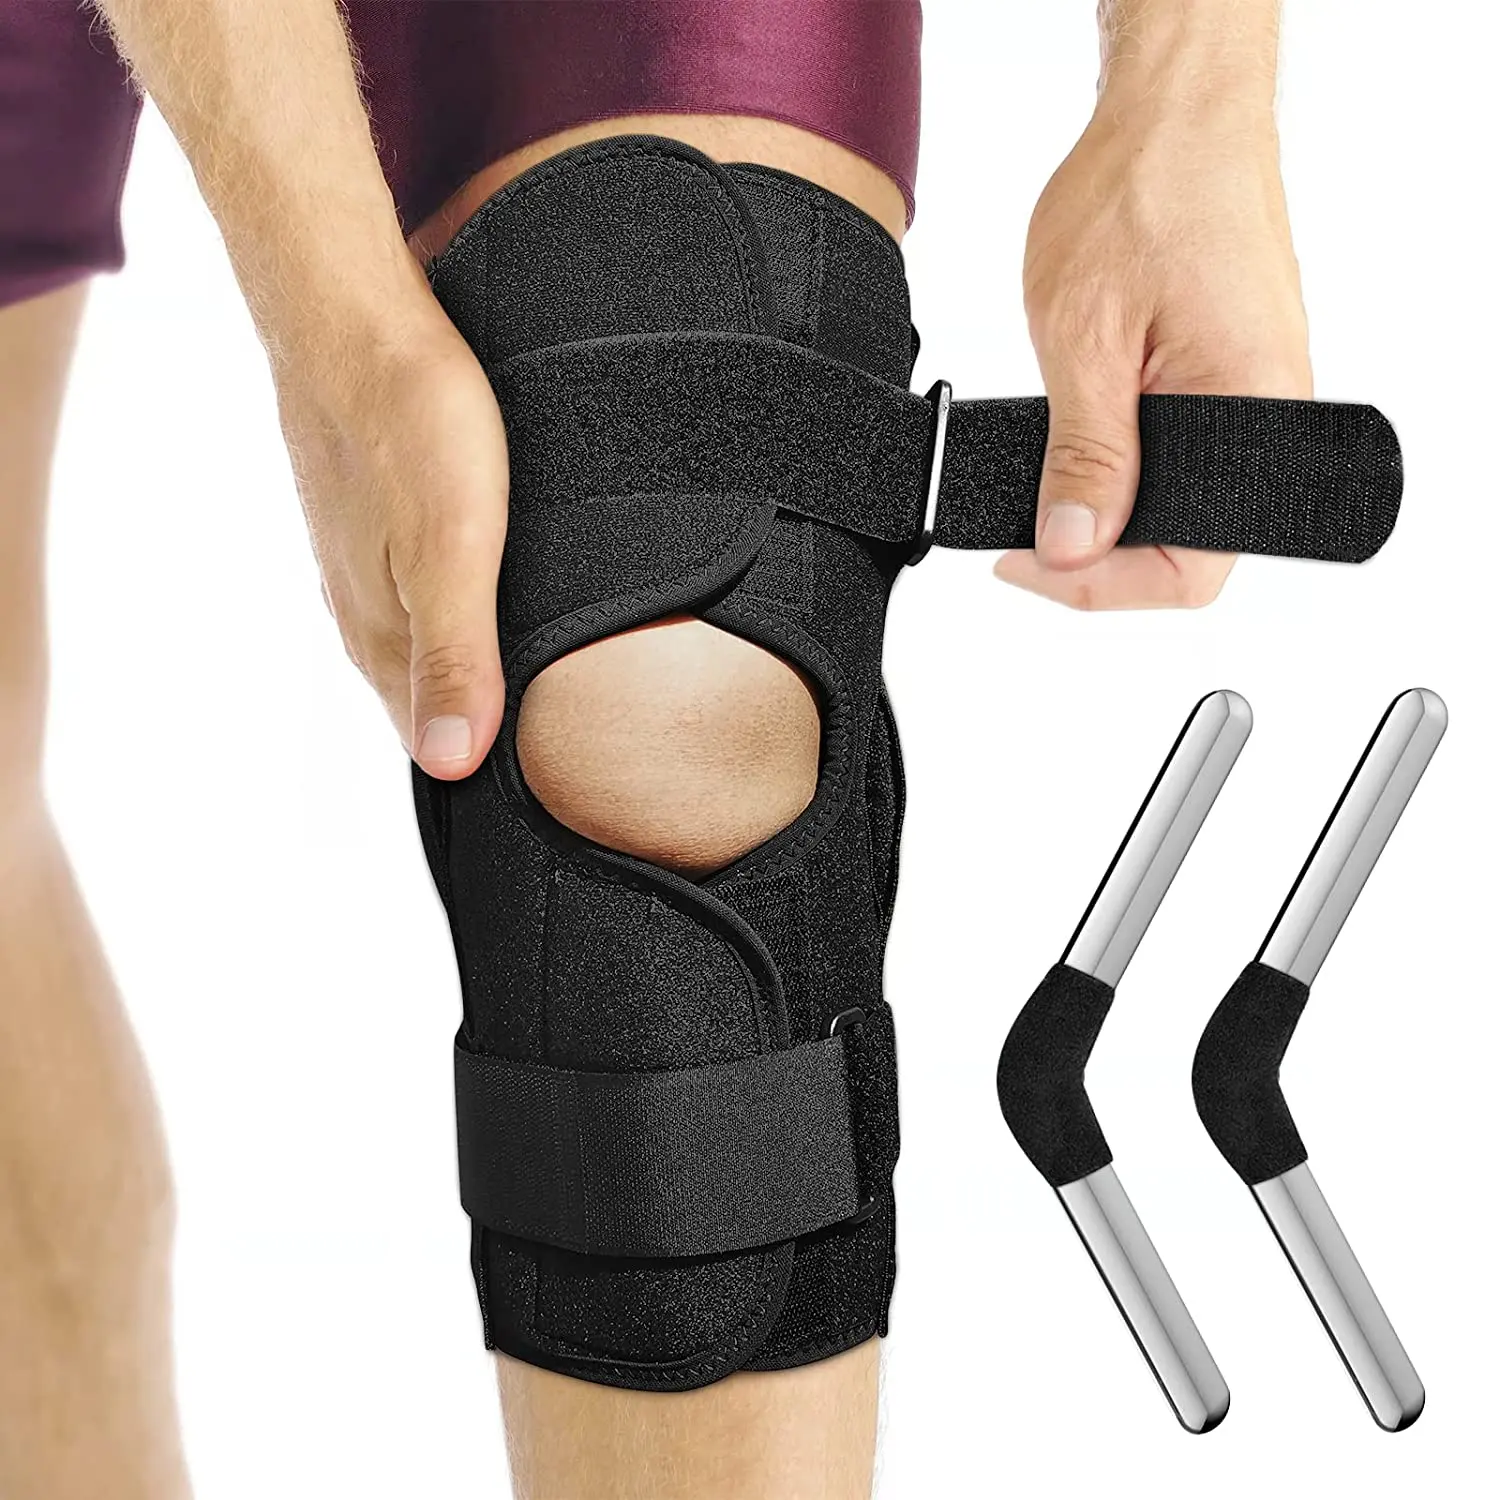 HKJD ginocchiera incernierata cinturino regolabile aperto immobilizzatore per ginocchio rotula di grado medico per artrite, strappo del menisco, ACL/PCL